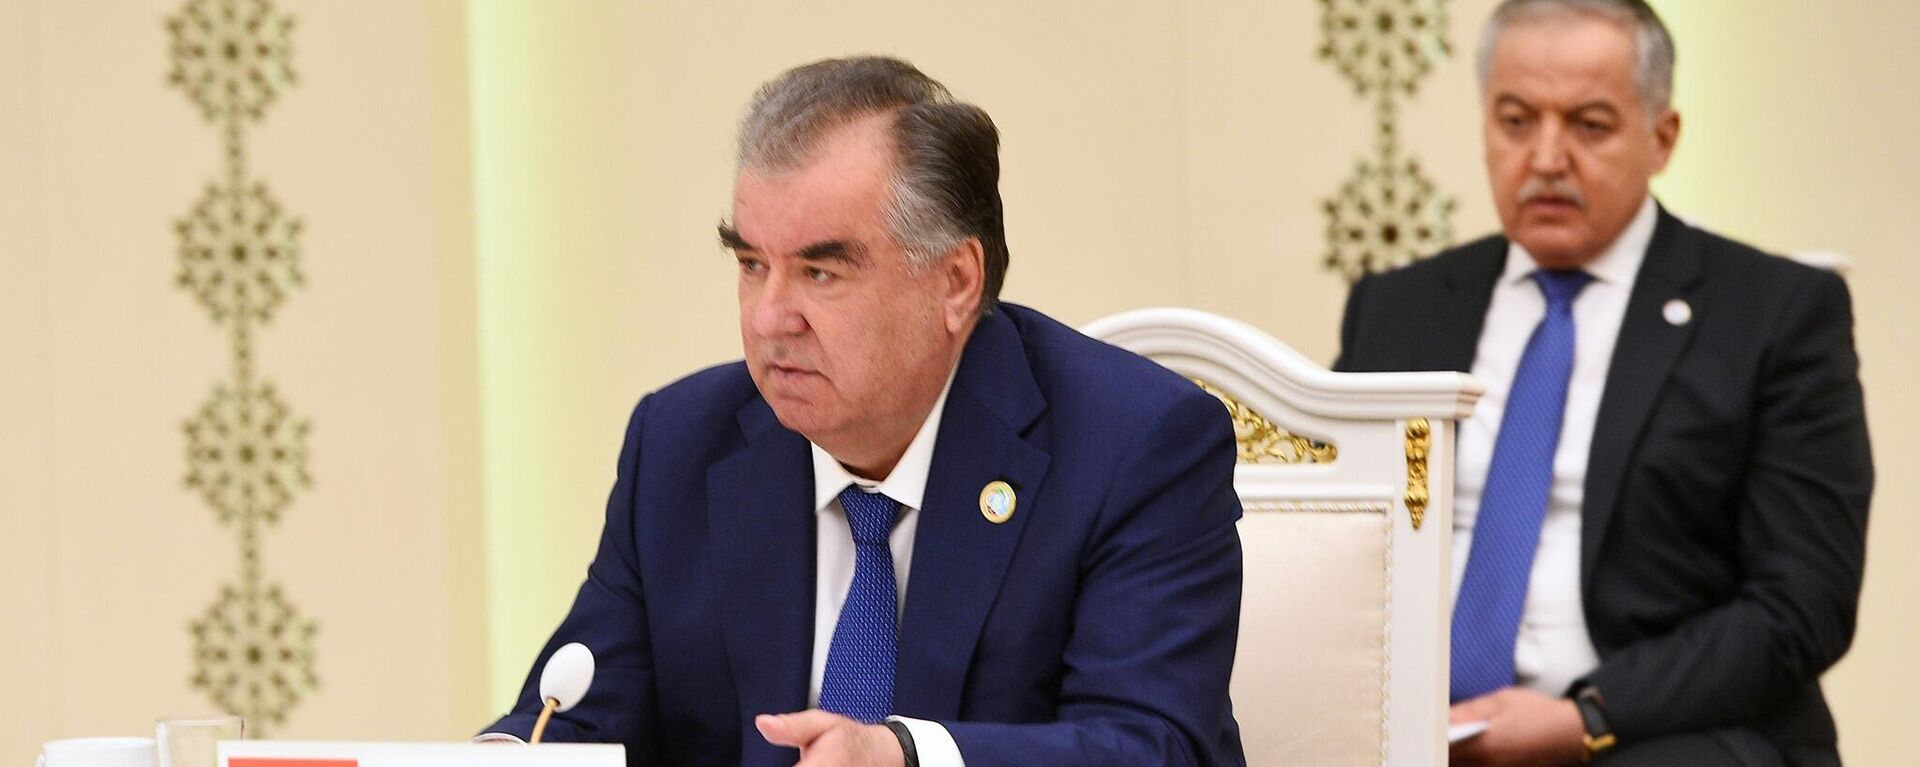 Президент Таджикистана Эмомали Рахмон - Sputnik Ўзбекистон, 1920, 08.09.2021